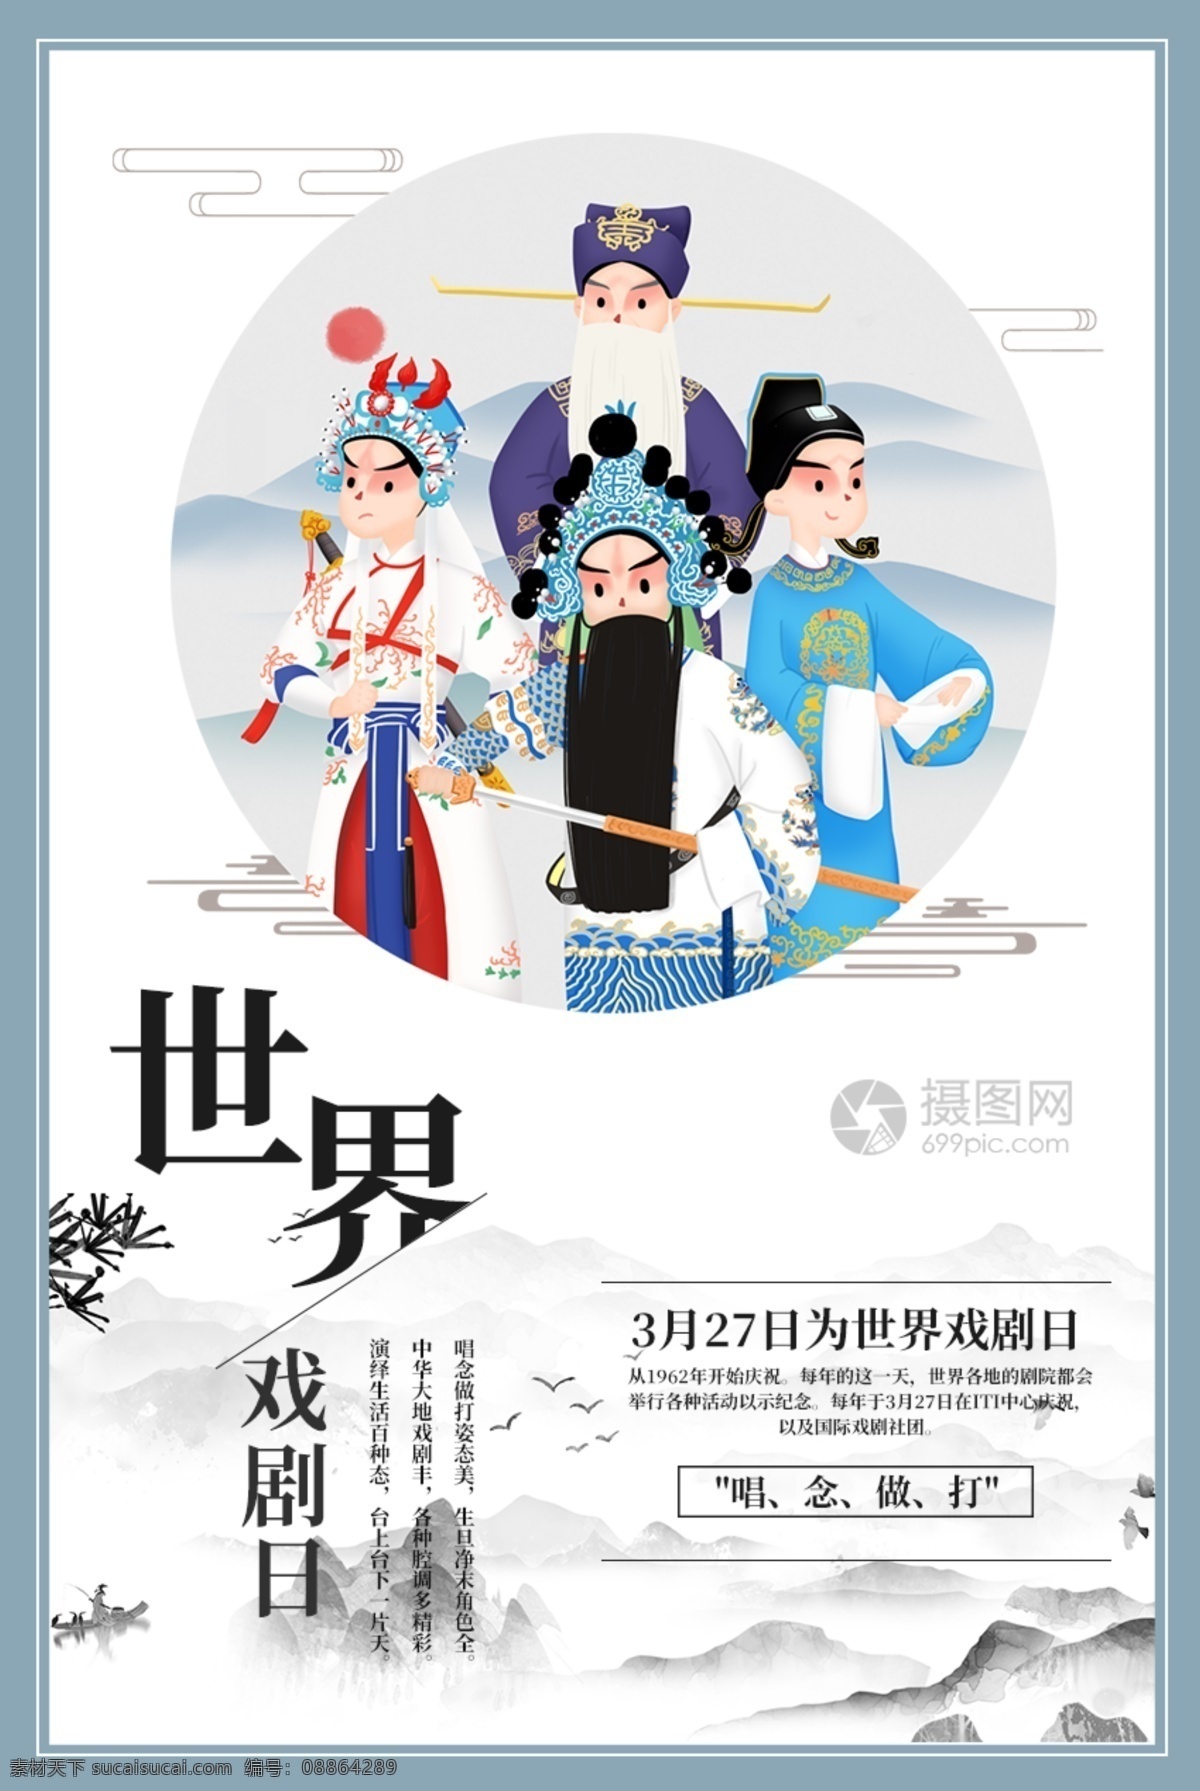 世界 戏剧 日 海报 世界戏曲日 京剧 国粹 中国戏曲 文化 3月27日 世界戏剧日